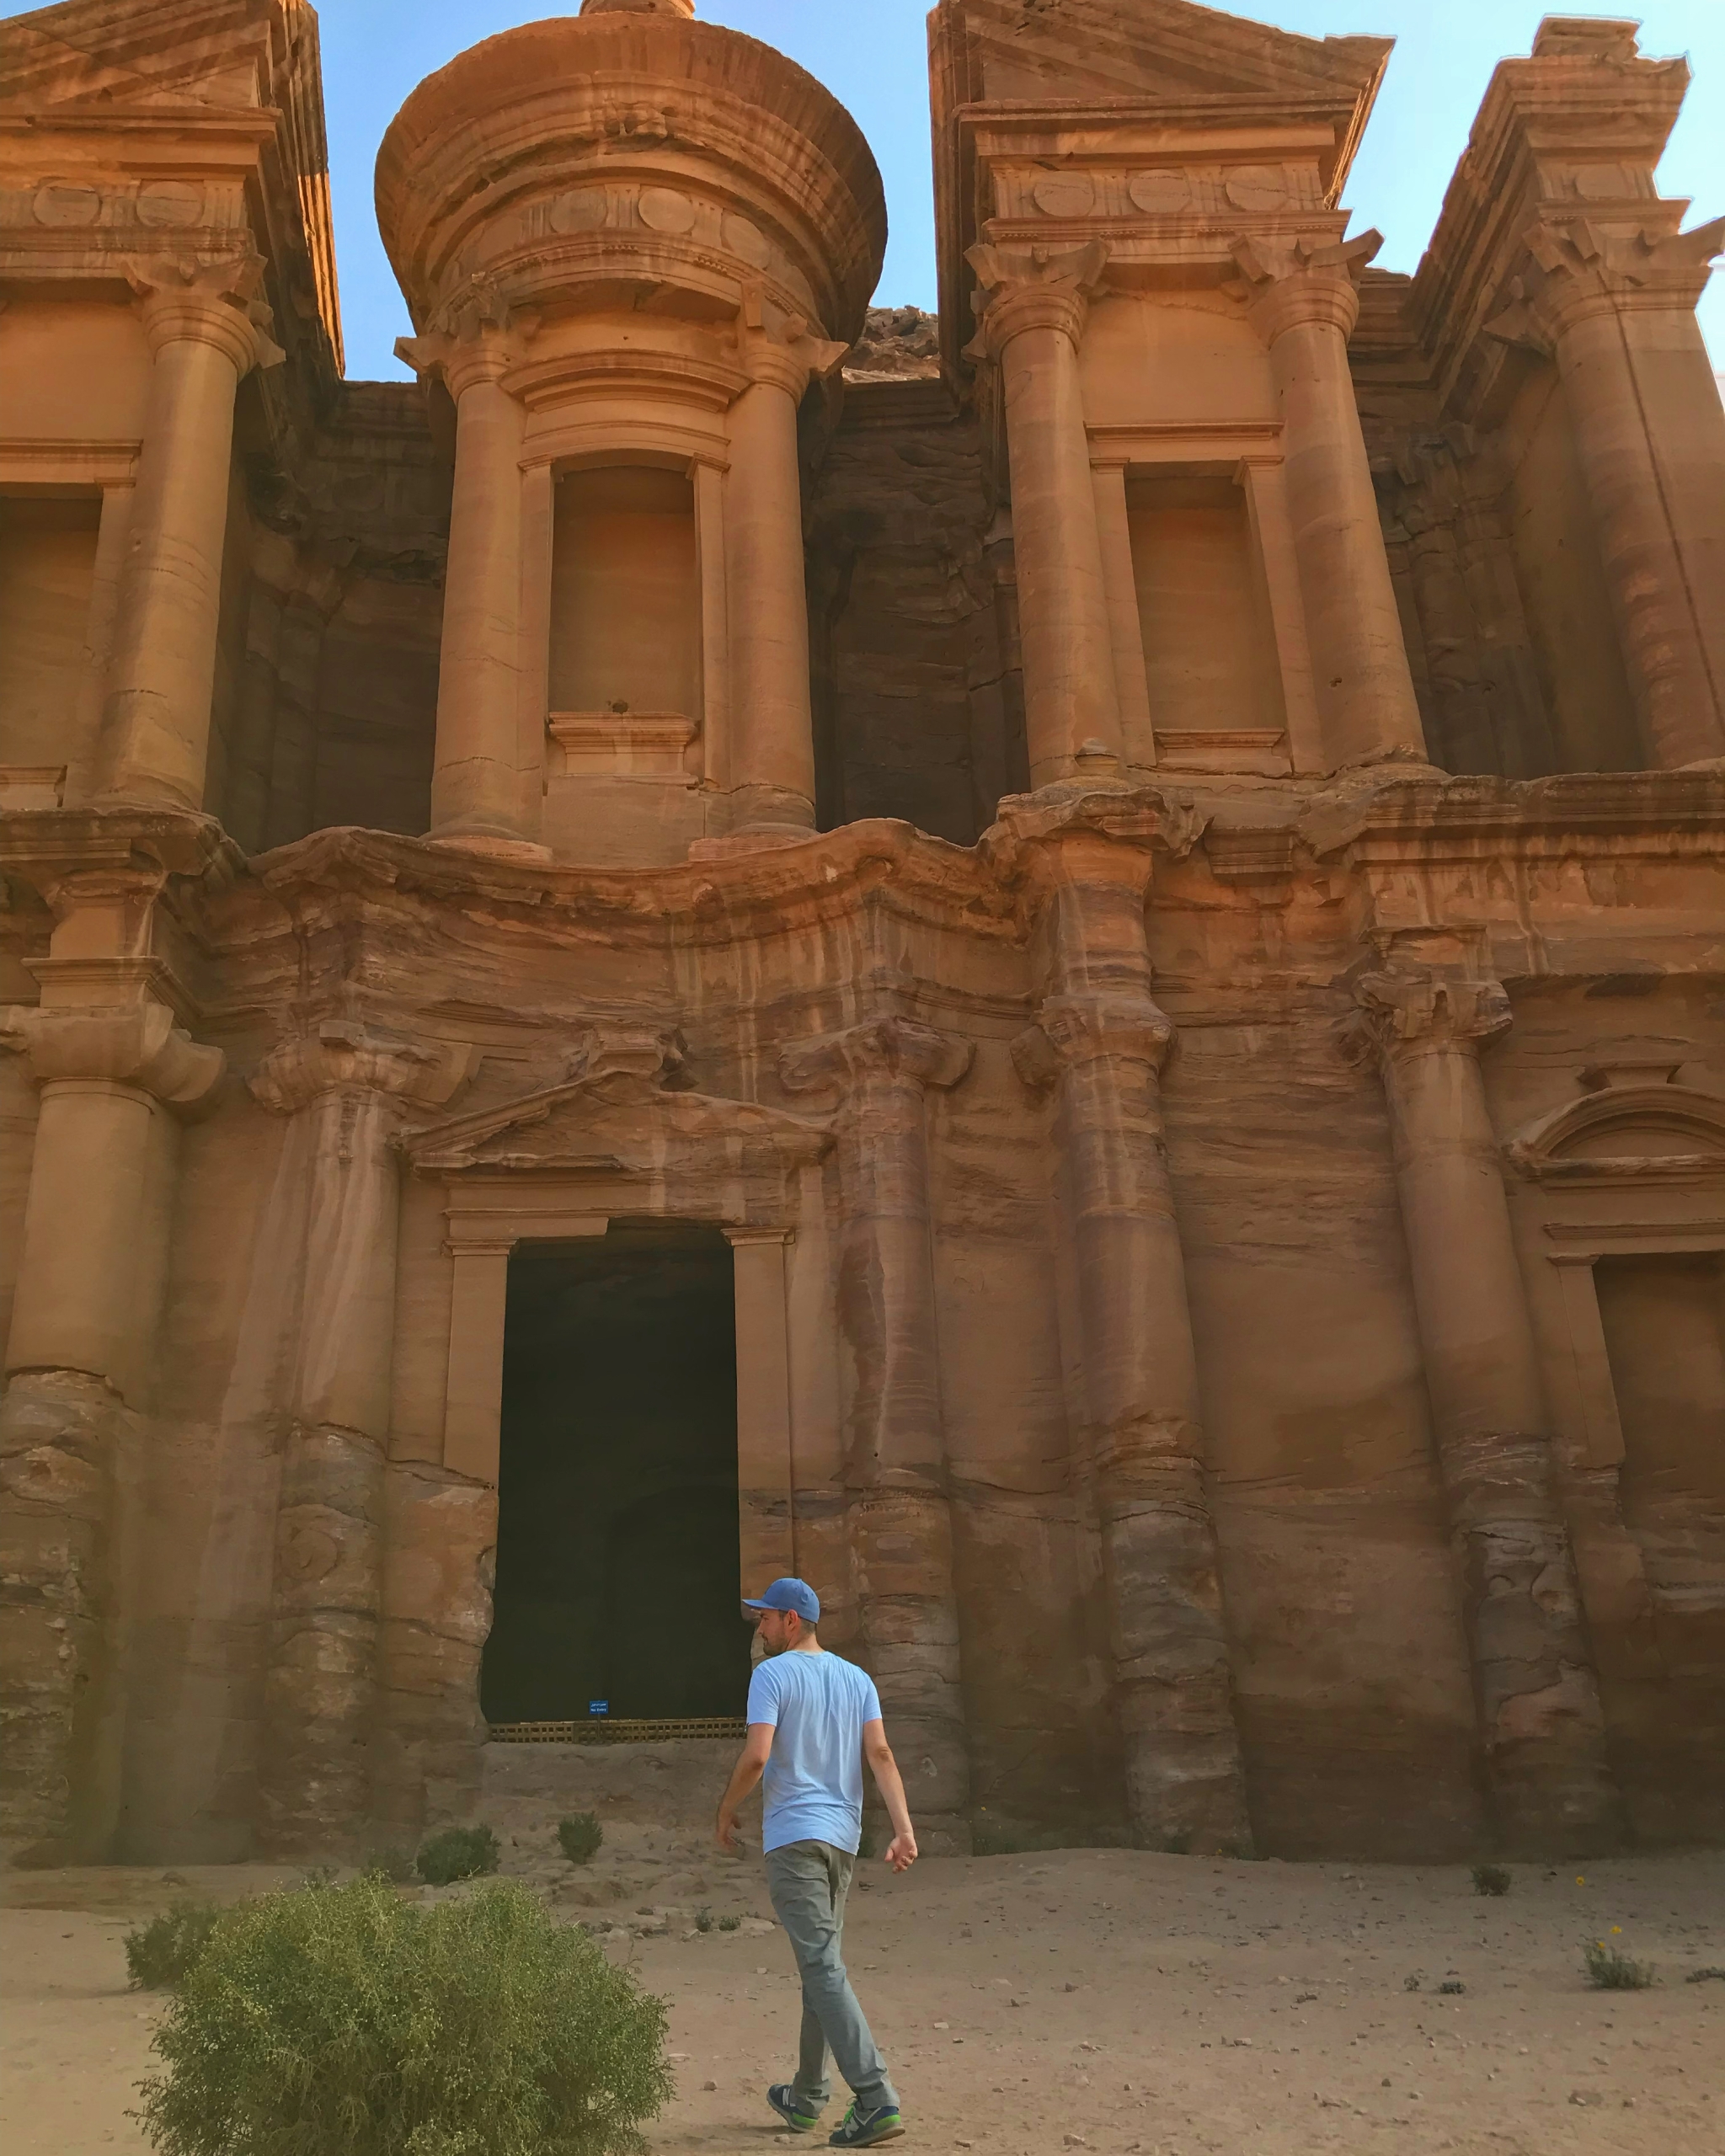 Itinerár na 8 dní po Jordánsku - Človek kráčajúci pred hrobkou vytesanou do skaly v skalnom meste Petra